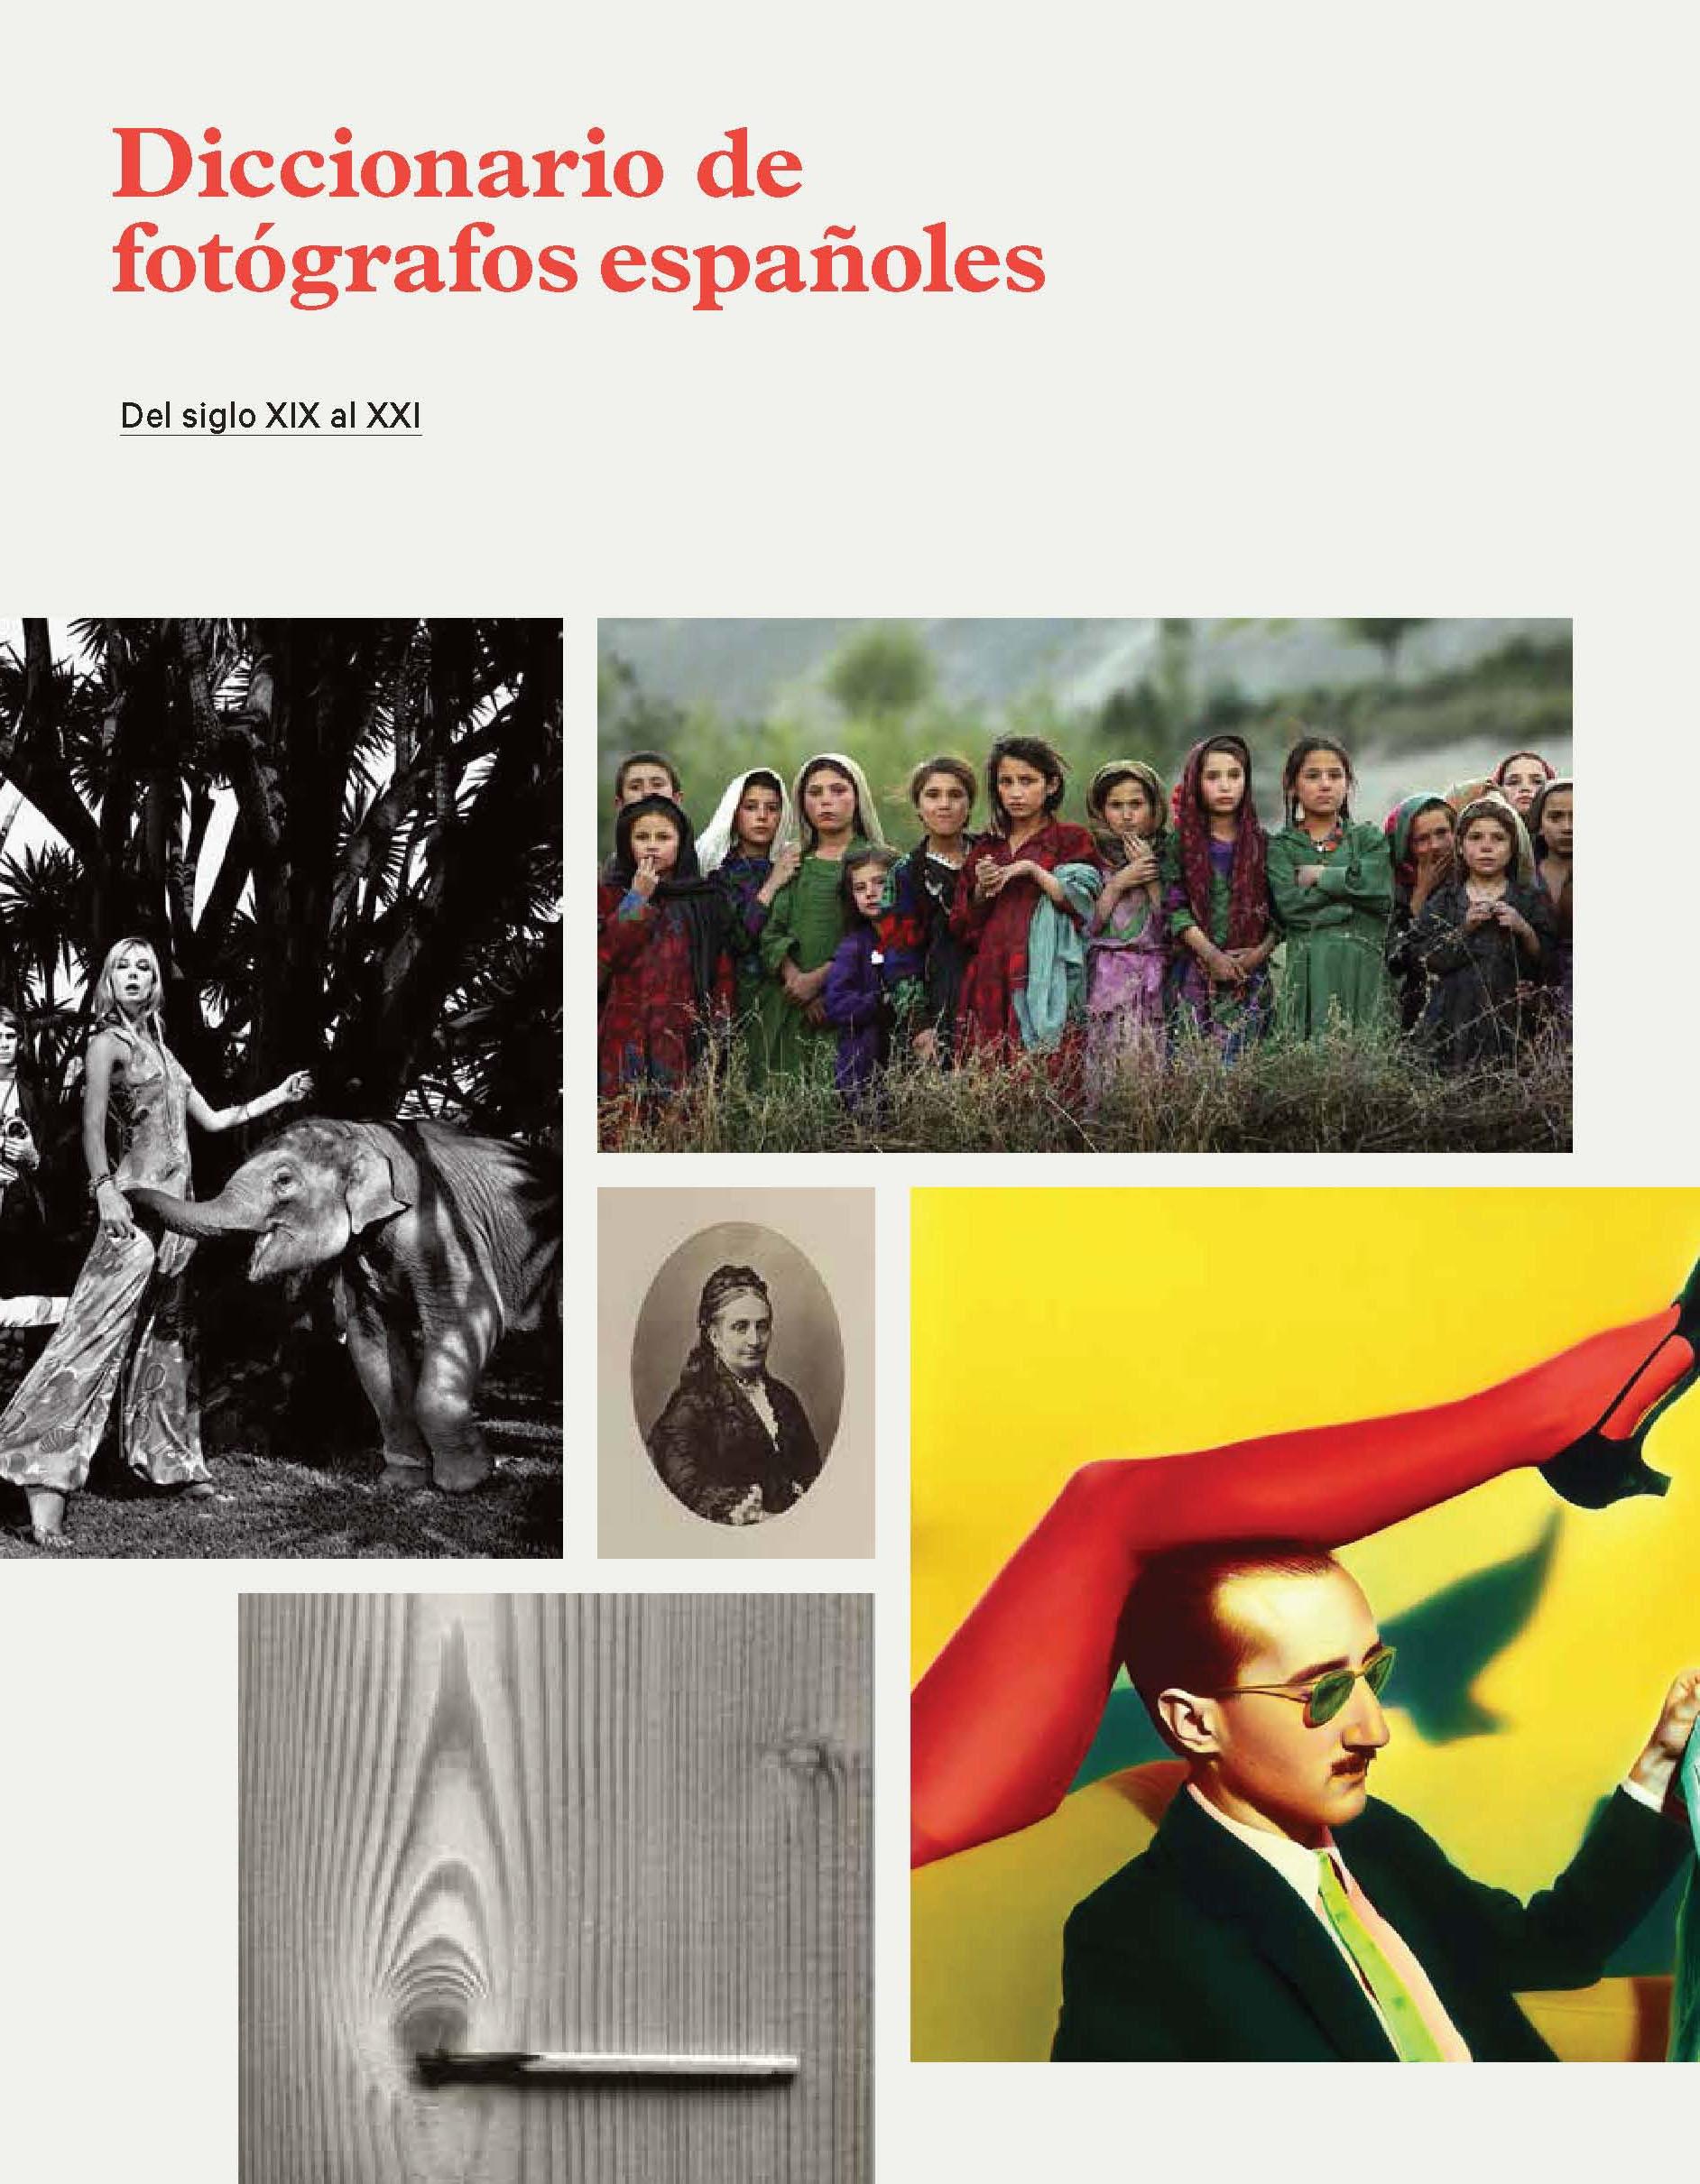 Diccionario de fotógrafos españoles: del siglo XIX al XXI. 